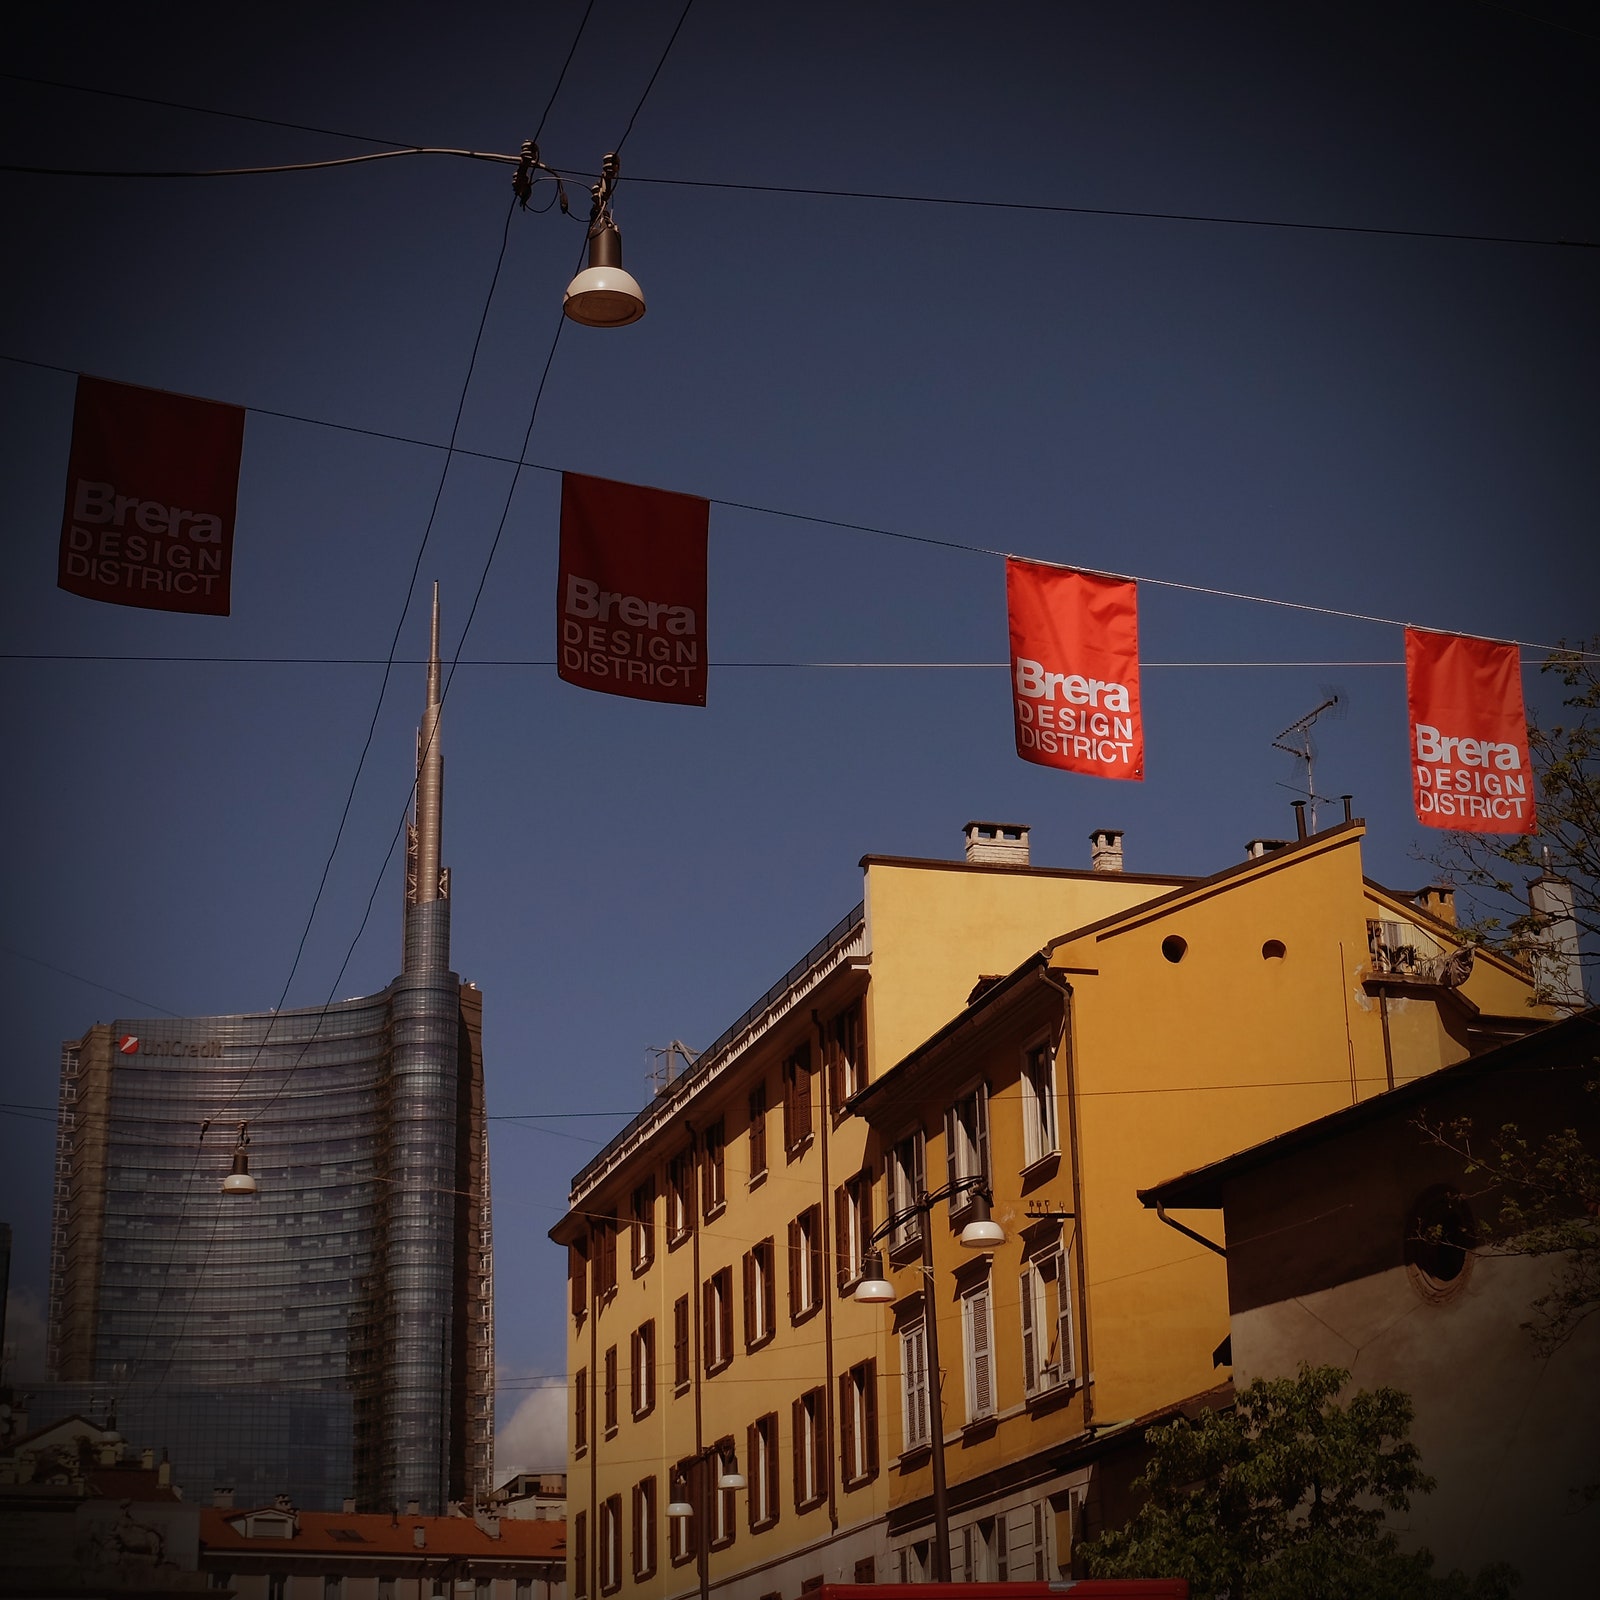 Гид по Милану 2021 дизайнкварталы и главные события Milan Design Week 2021